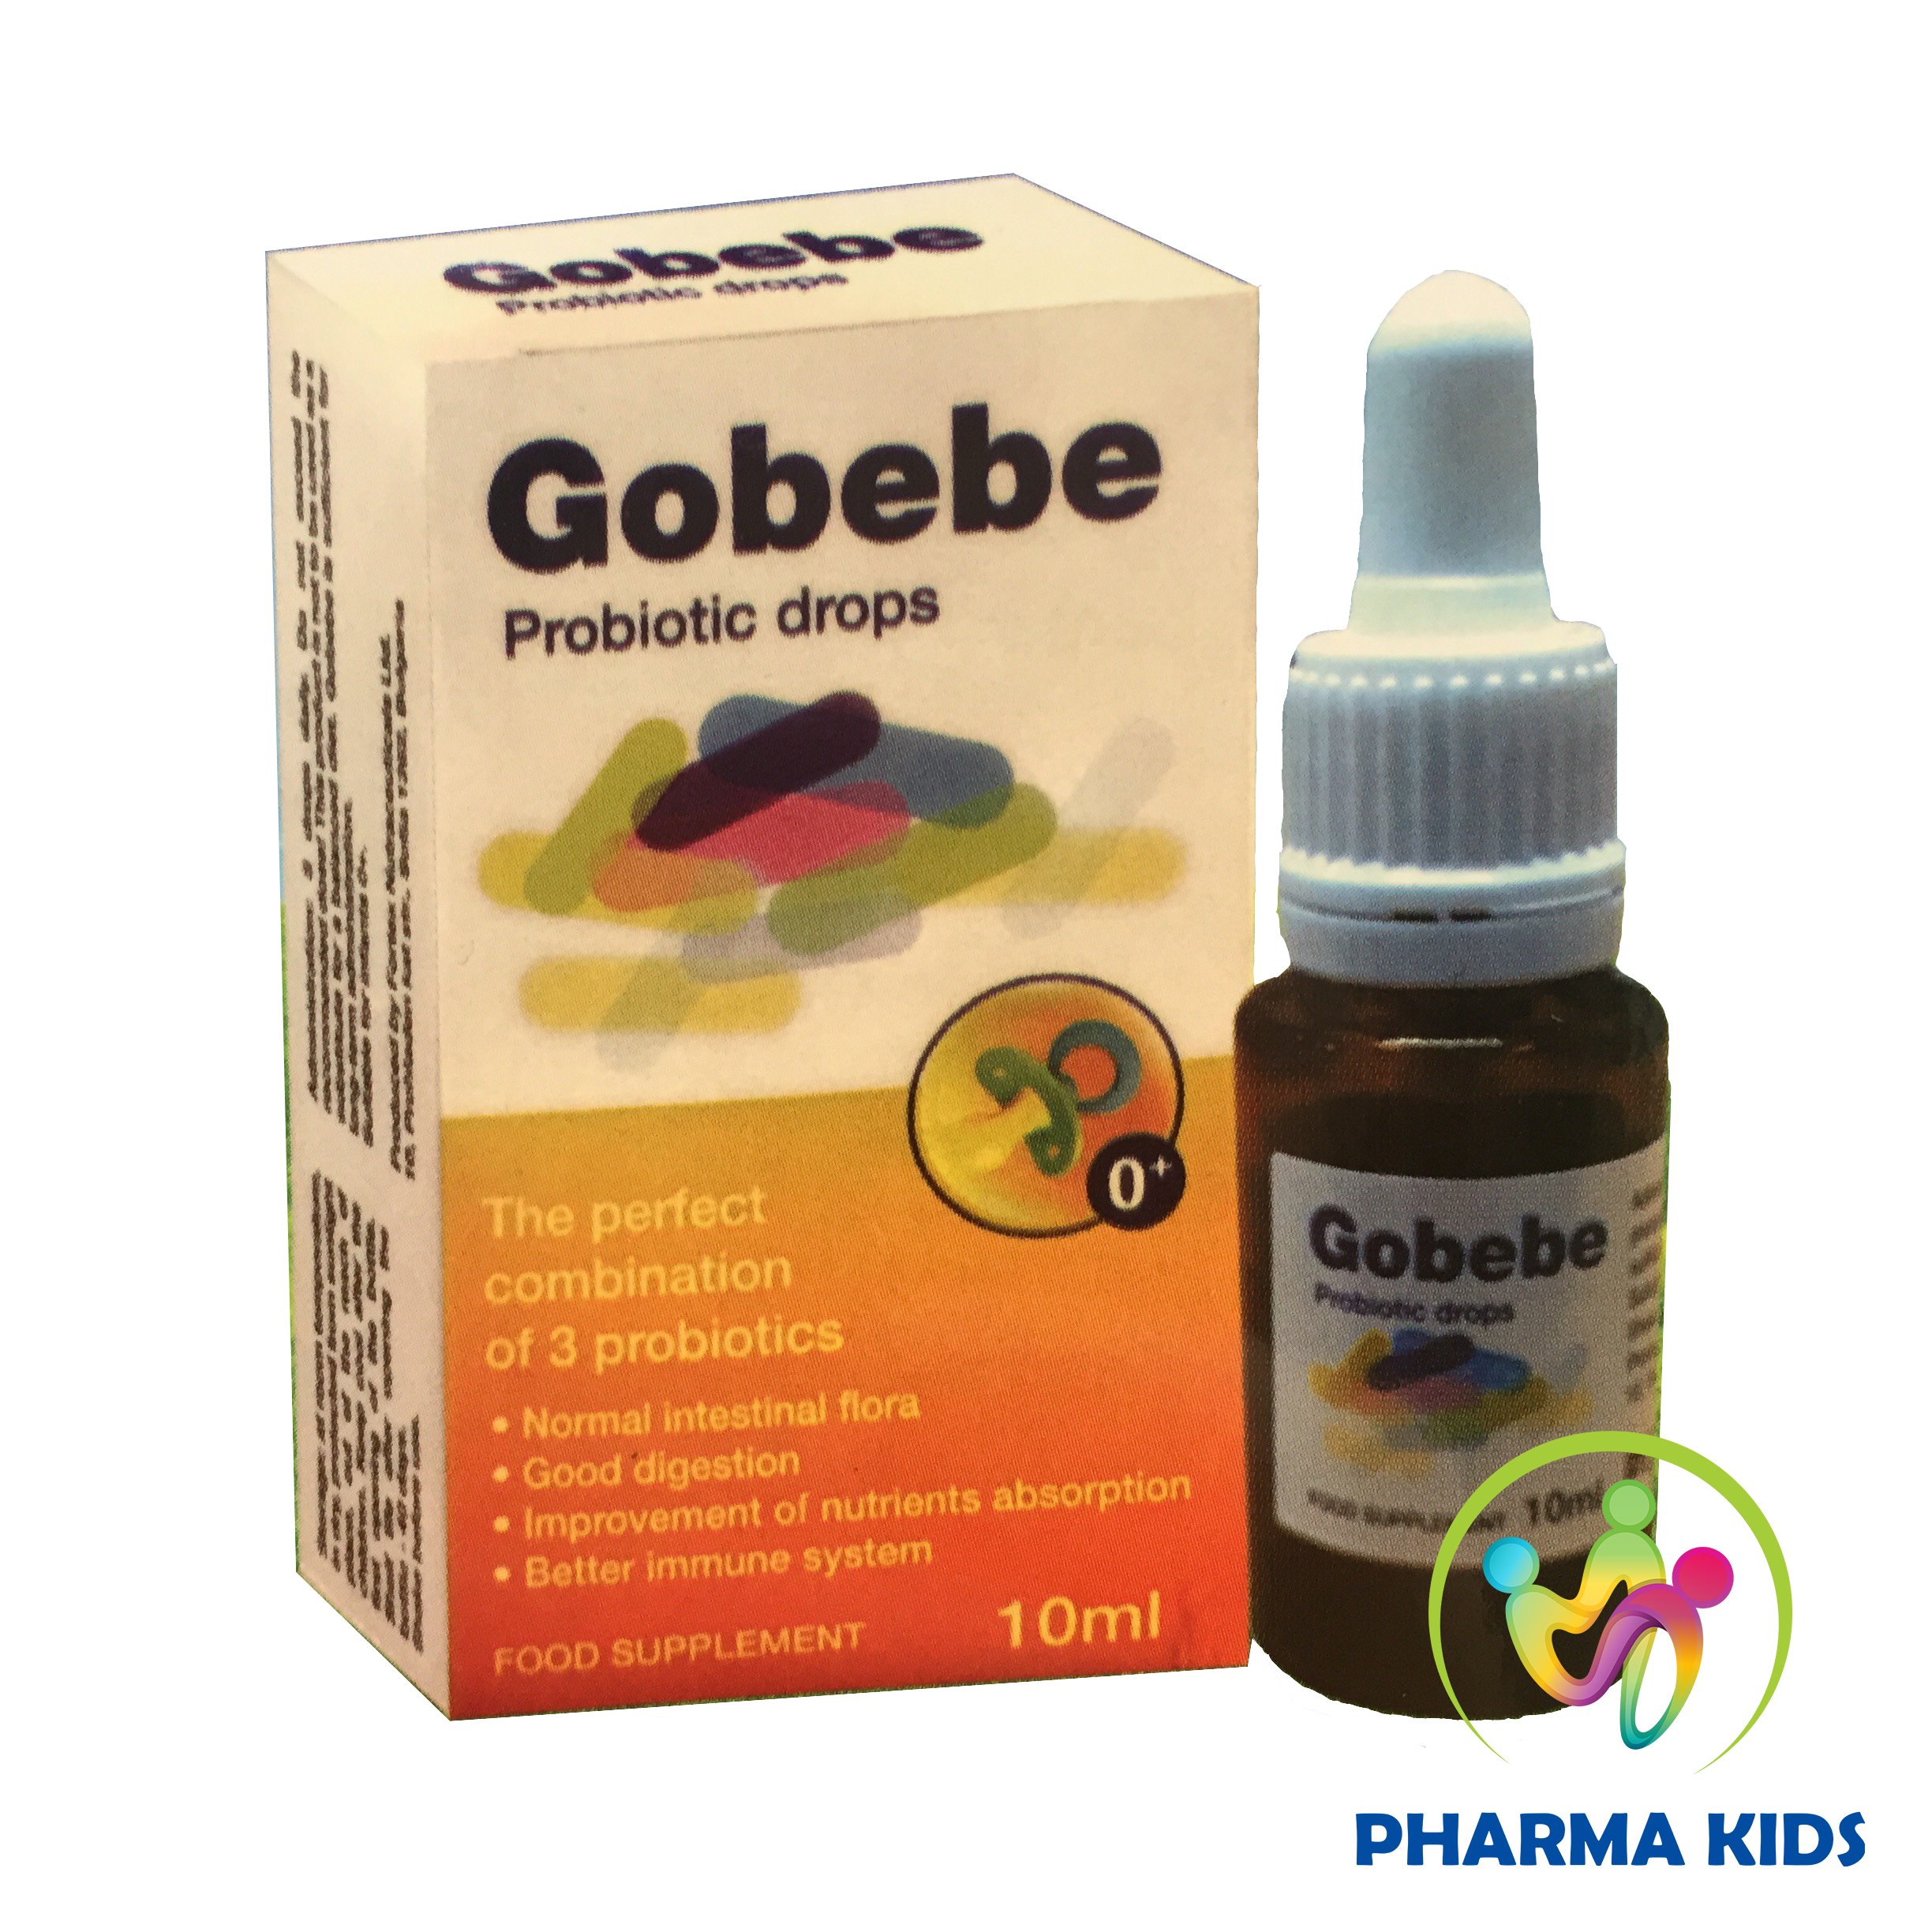 Gobebe